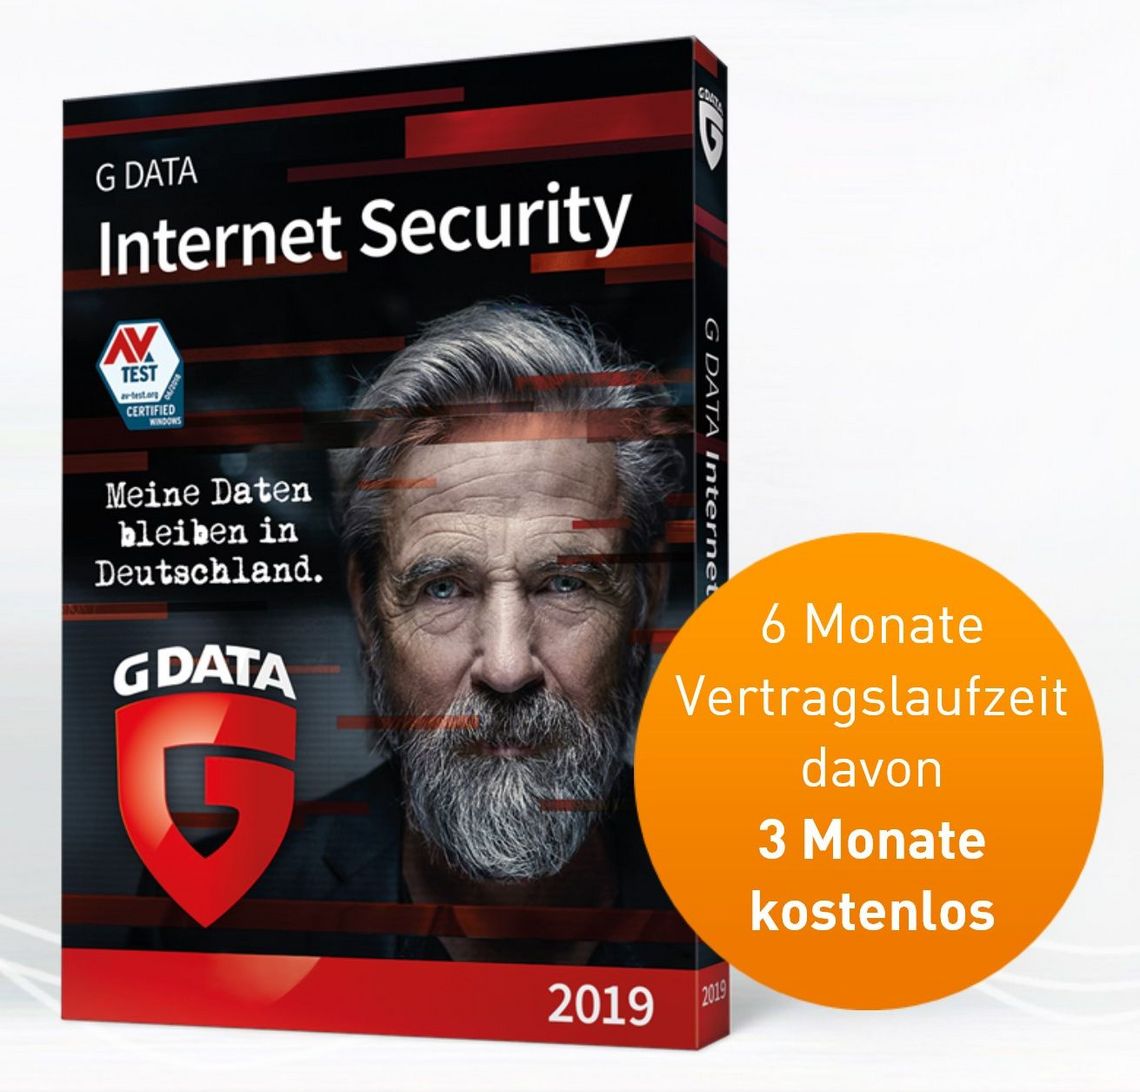 Abbildung Sicherheitspaket G DATA Internet Security mit Angebot